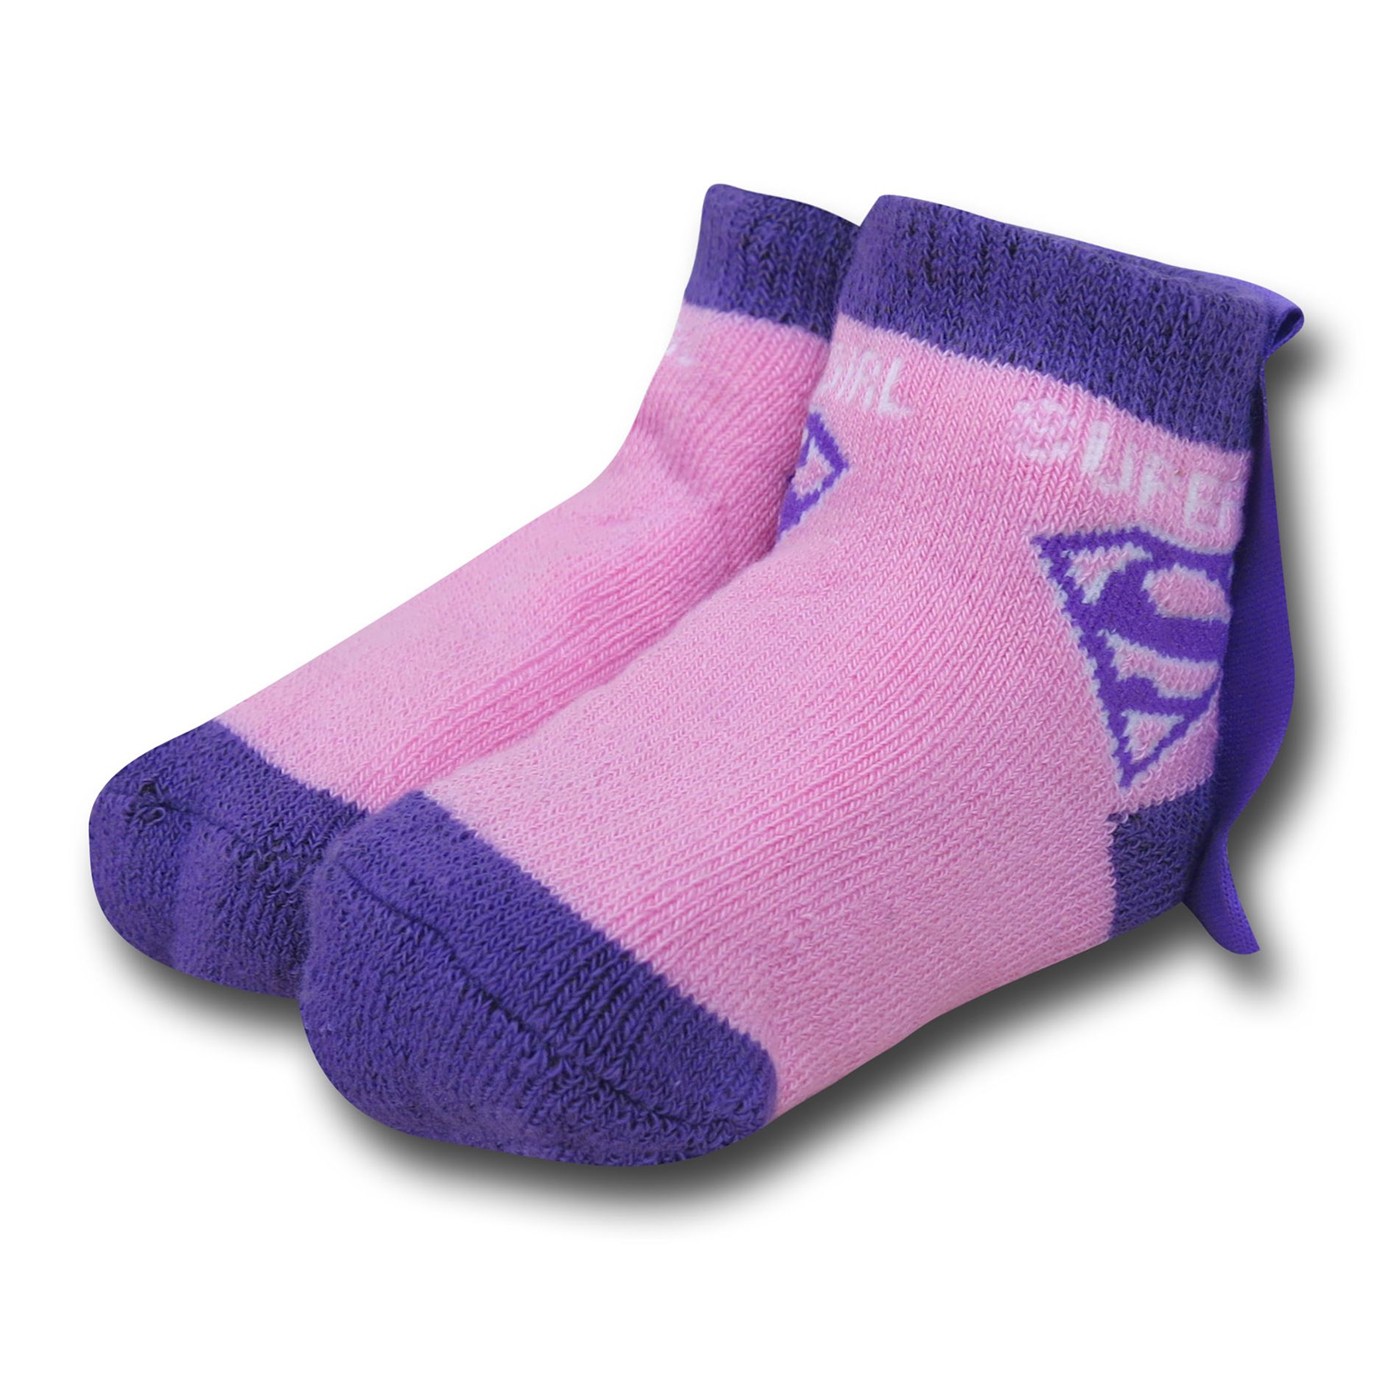 Supergirl Infant Socks